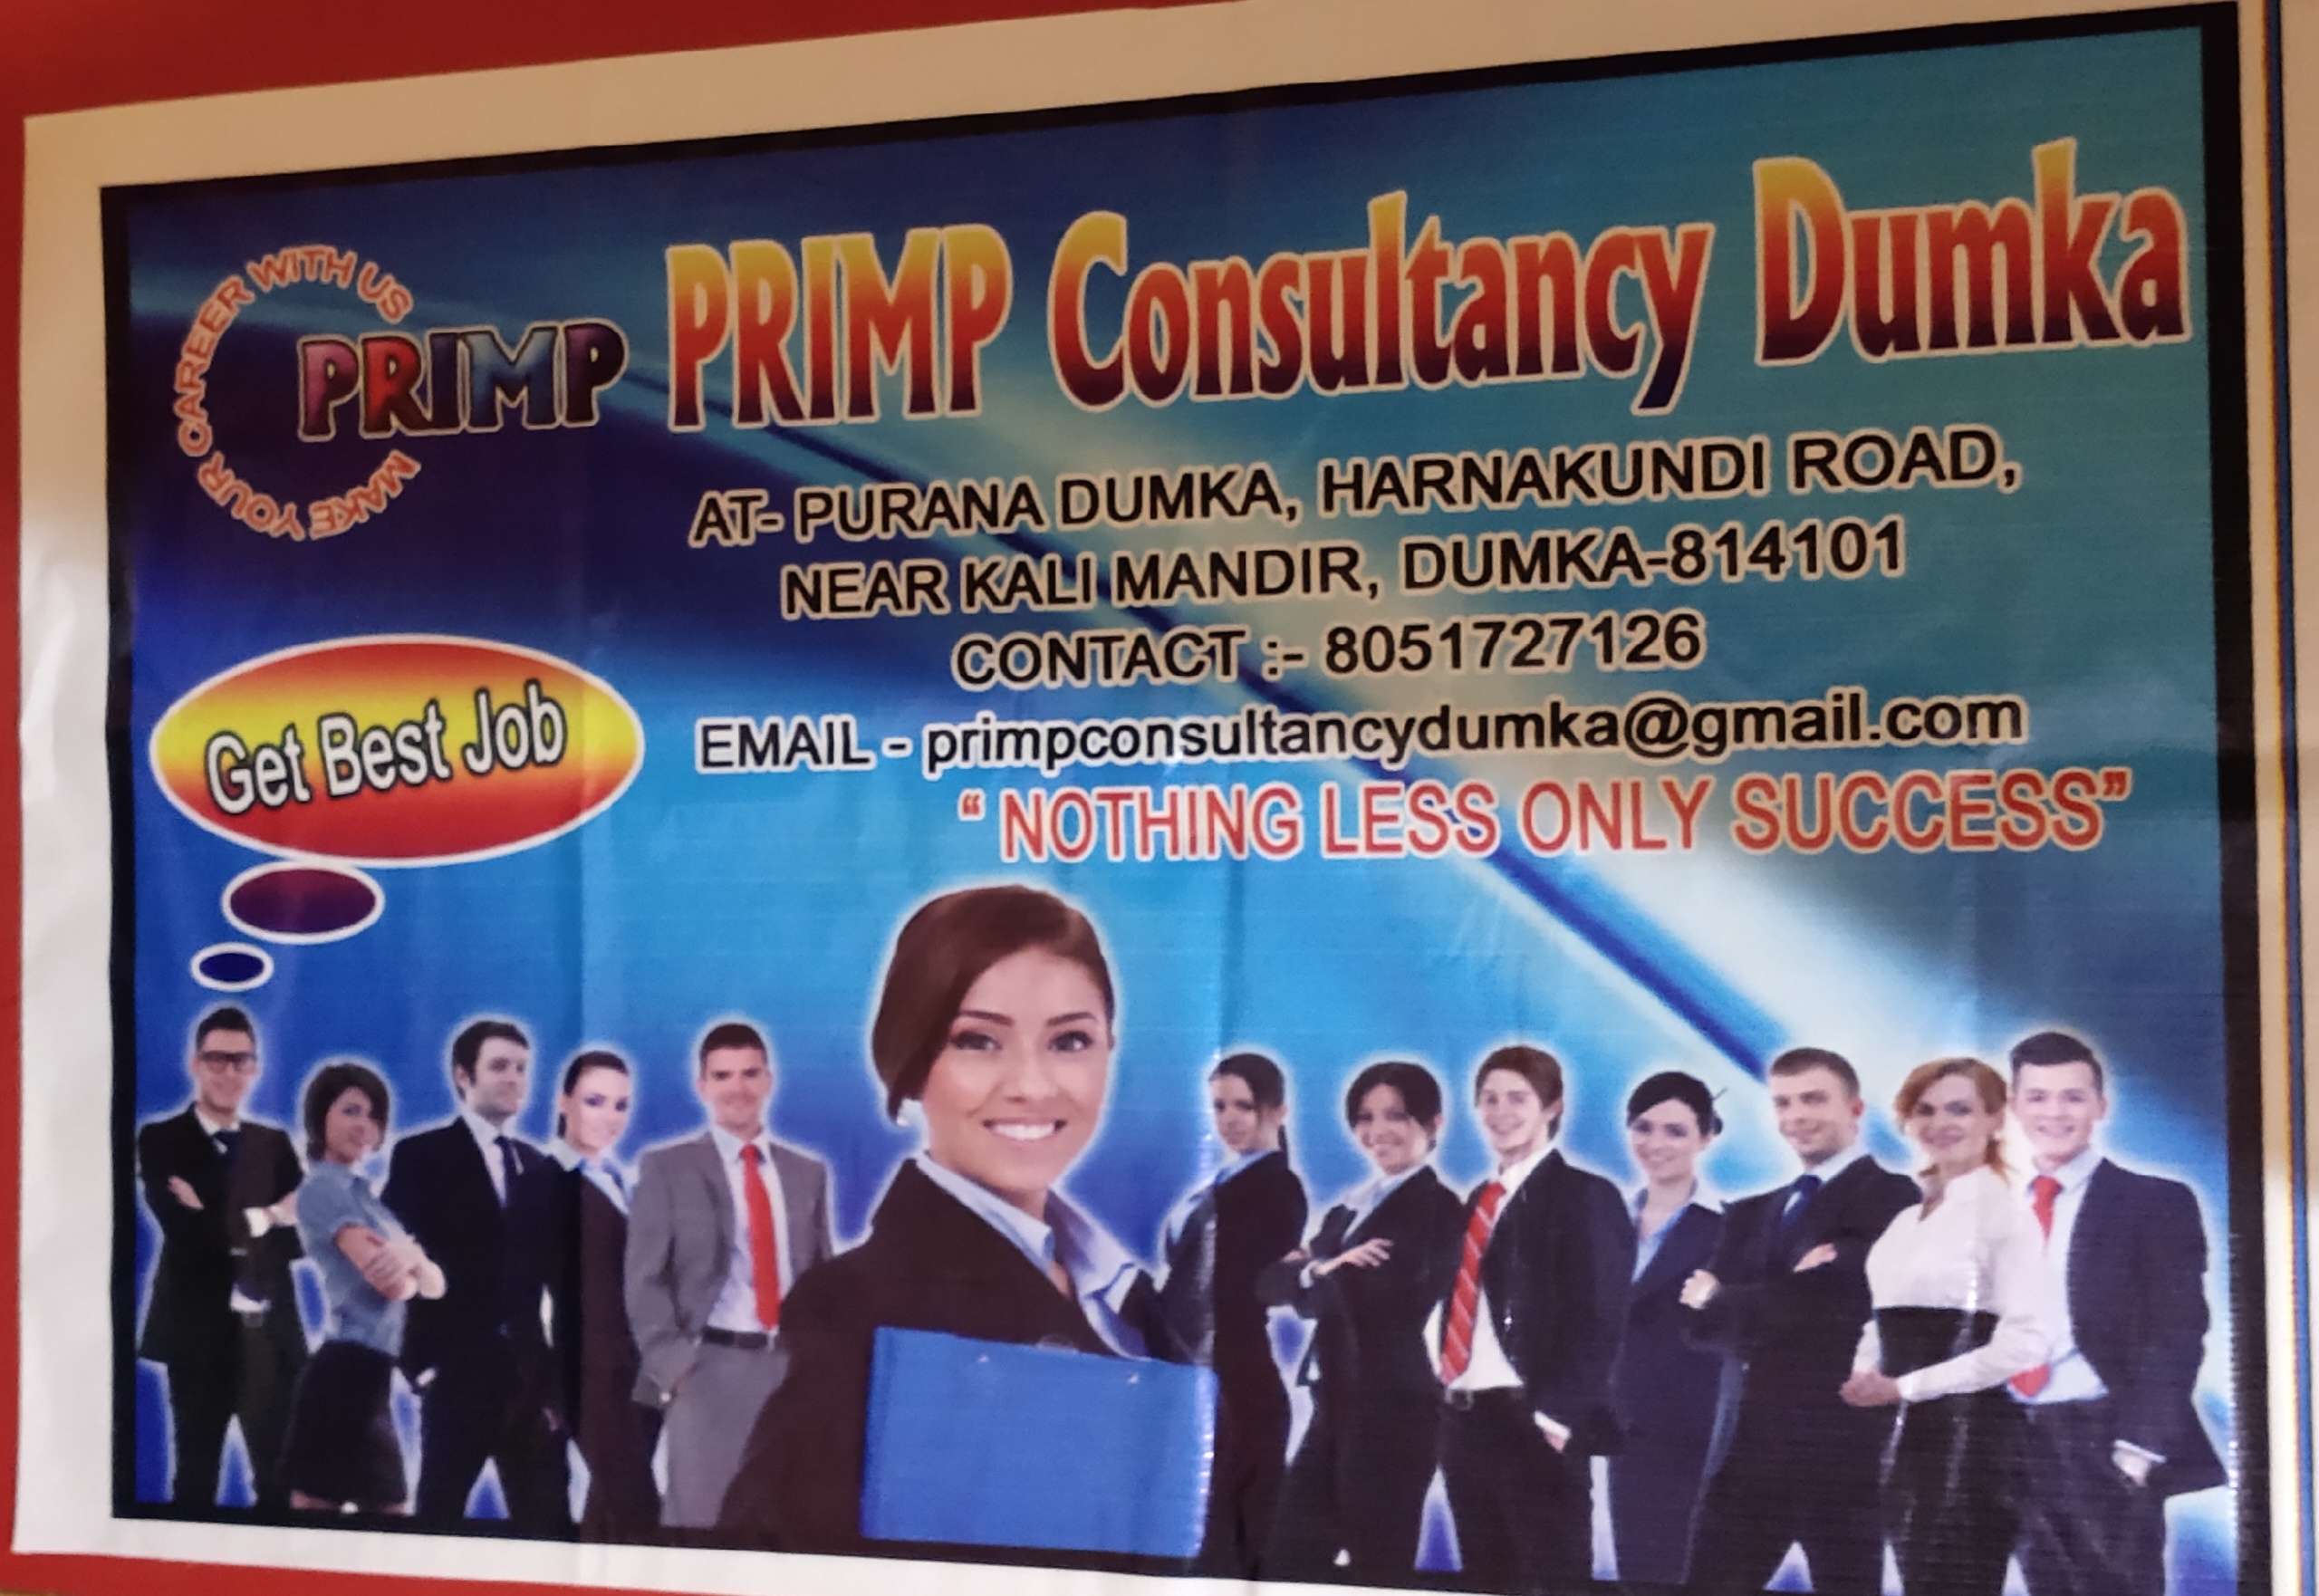 Primp Consultancy Dumka